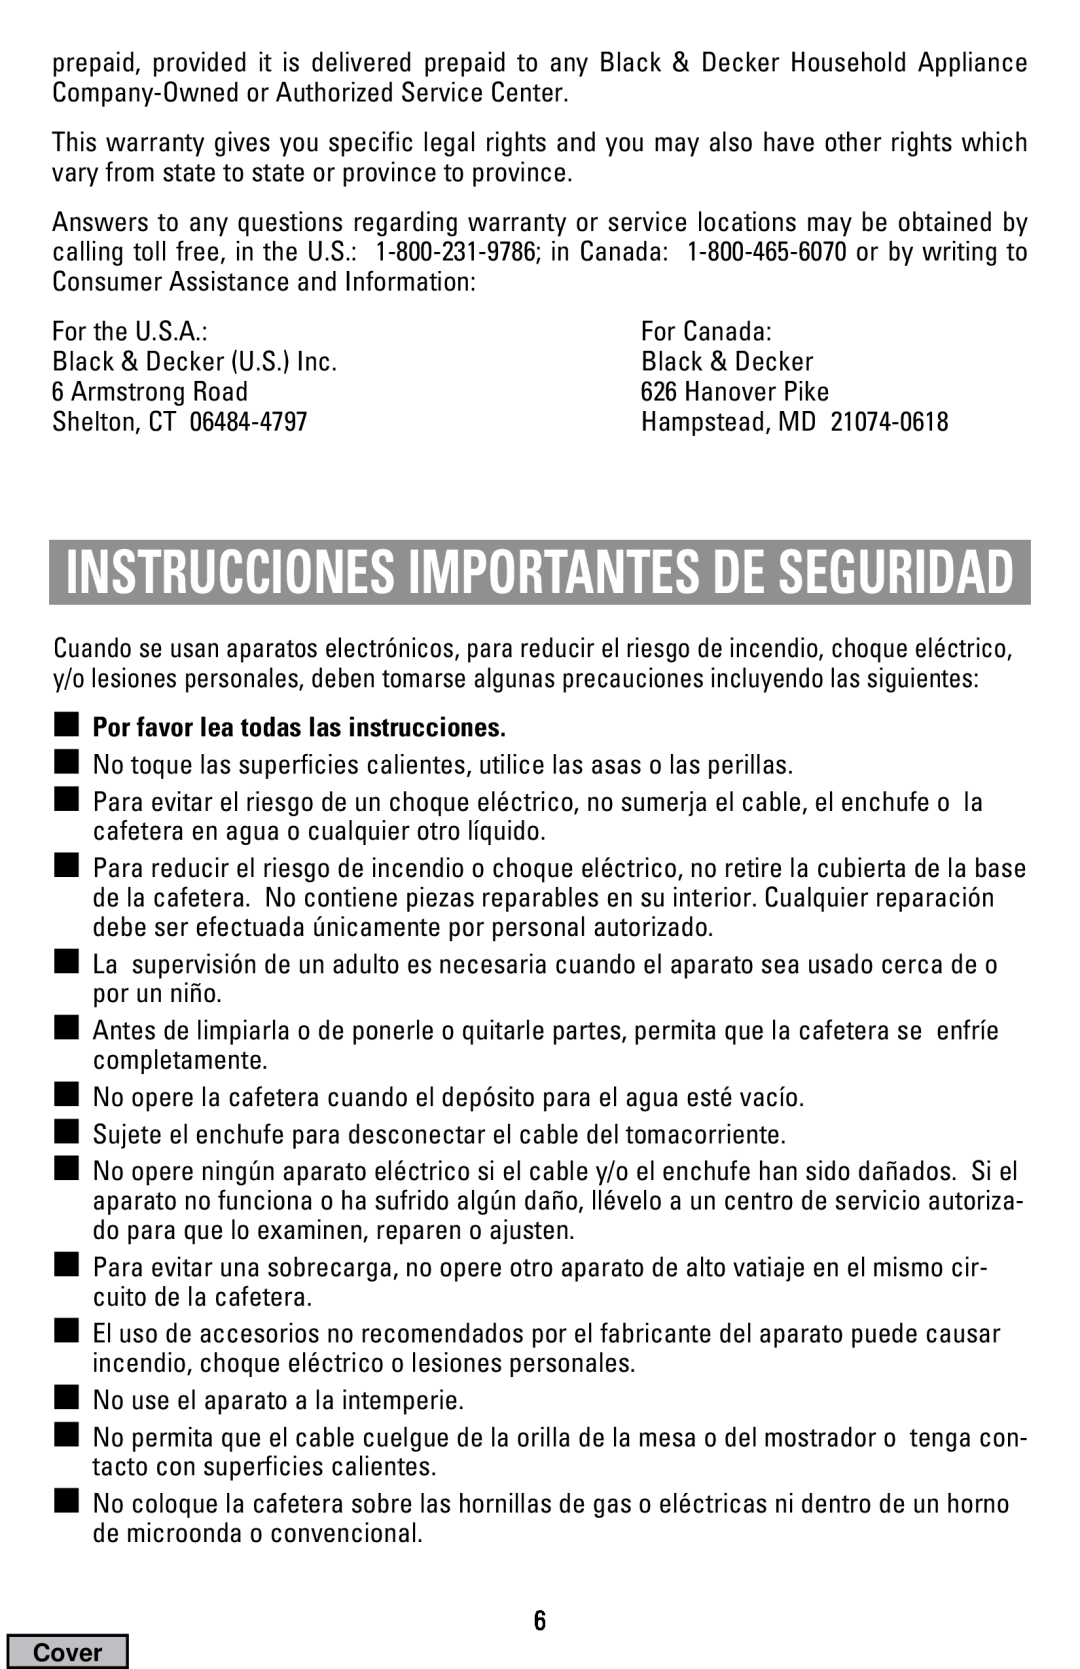 Black & Decker DCM19, DCM16 manual Instrucciones Importantes De Seguridad, Por favor lea todas las instrucciones 